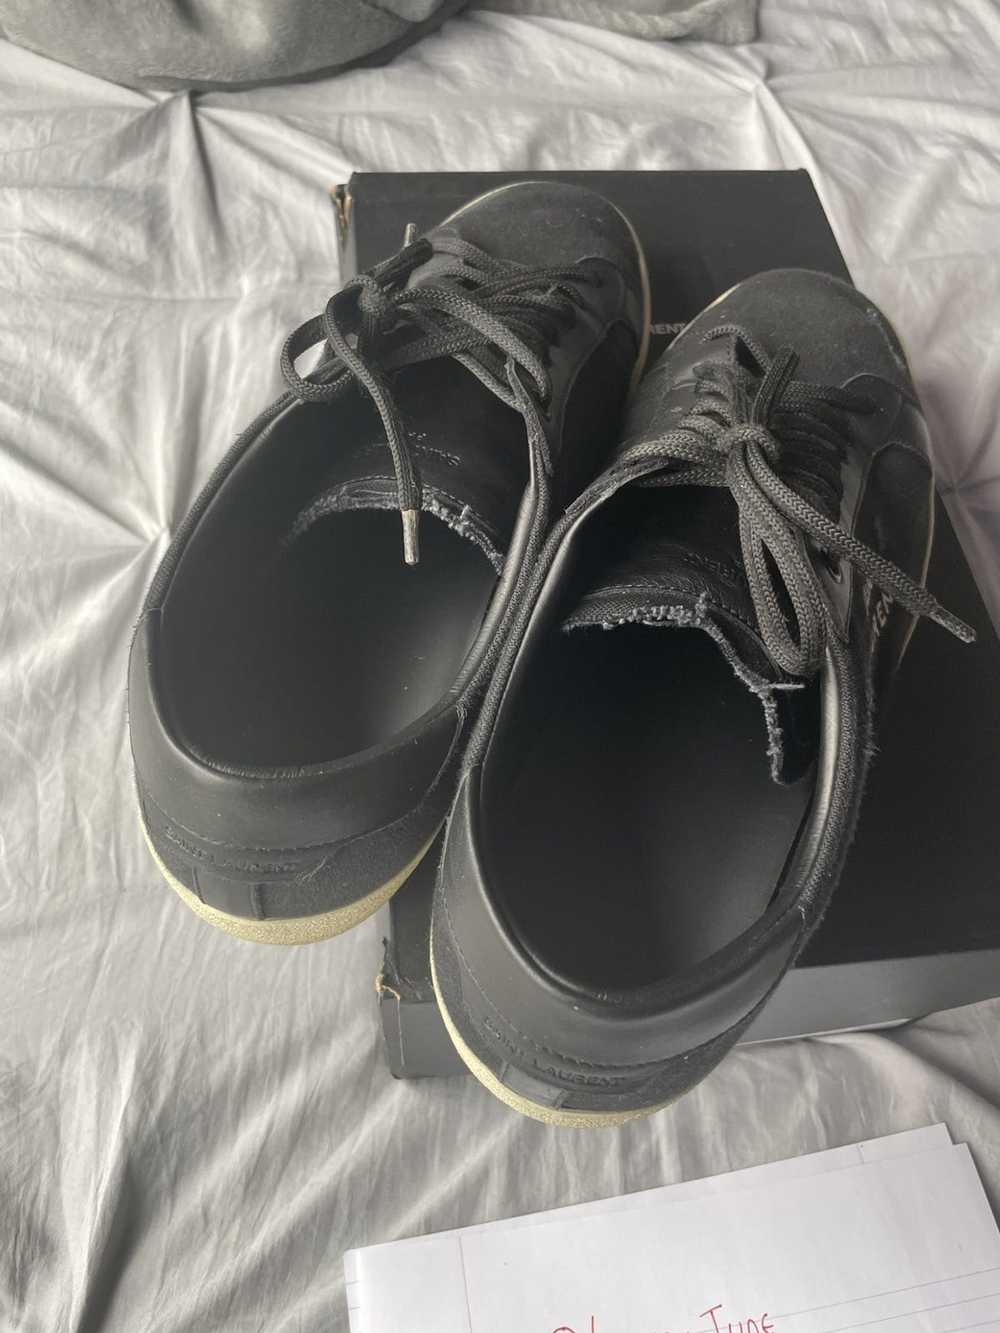 Yves Saint Laurent Saint Laurent Shoes - image 5